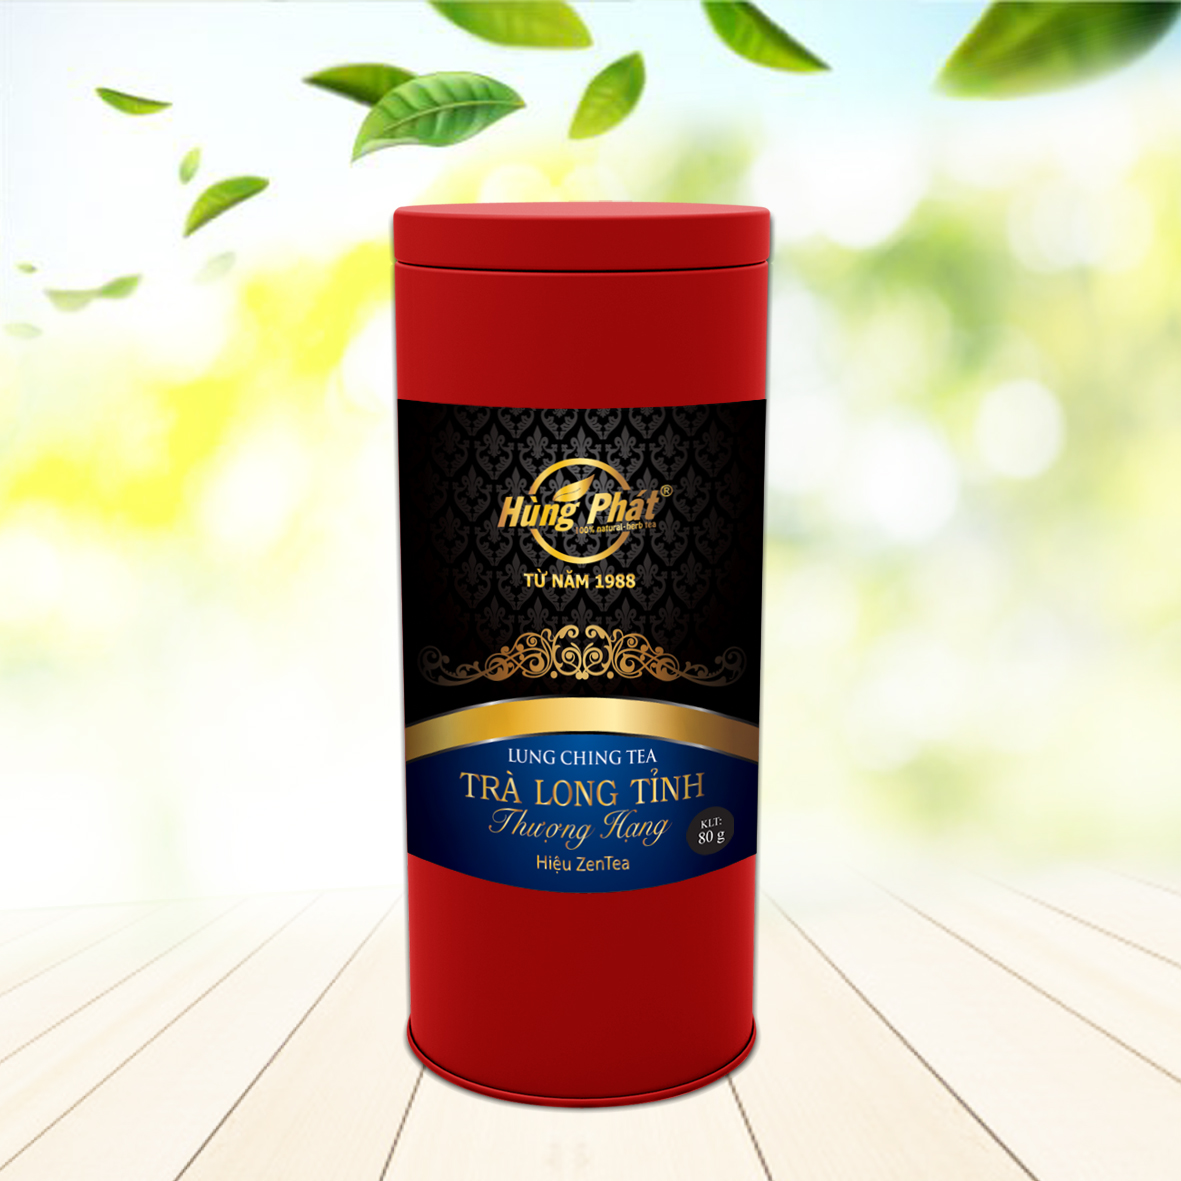 Trà Long Tỉnh Thượng Hạng 80g - Premium Lung Ching Tea